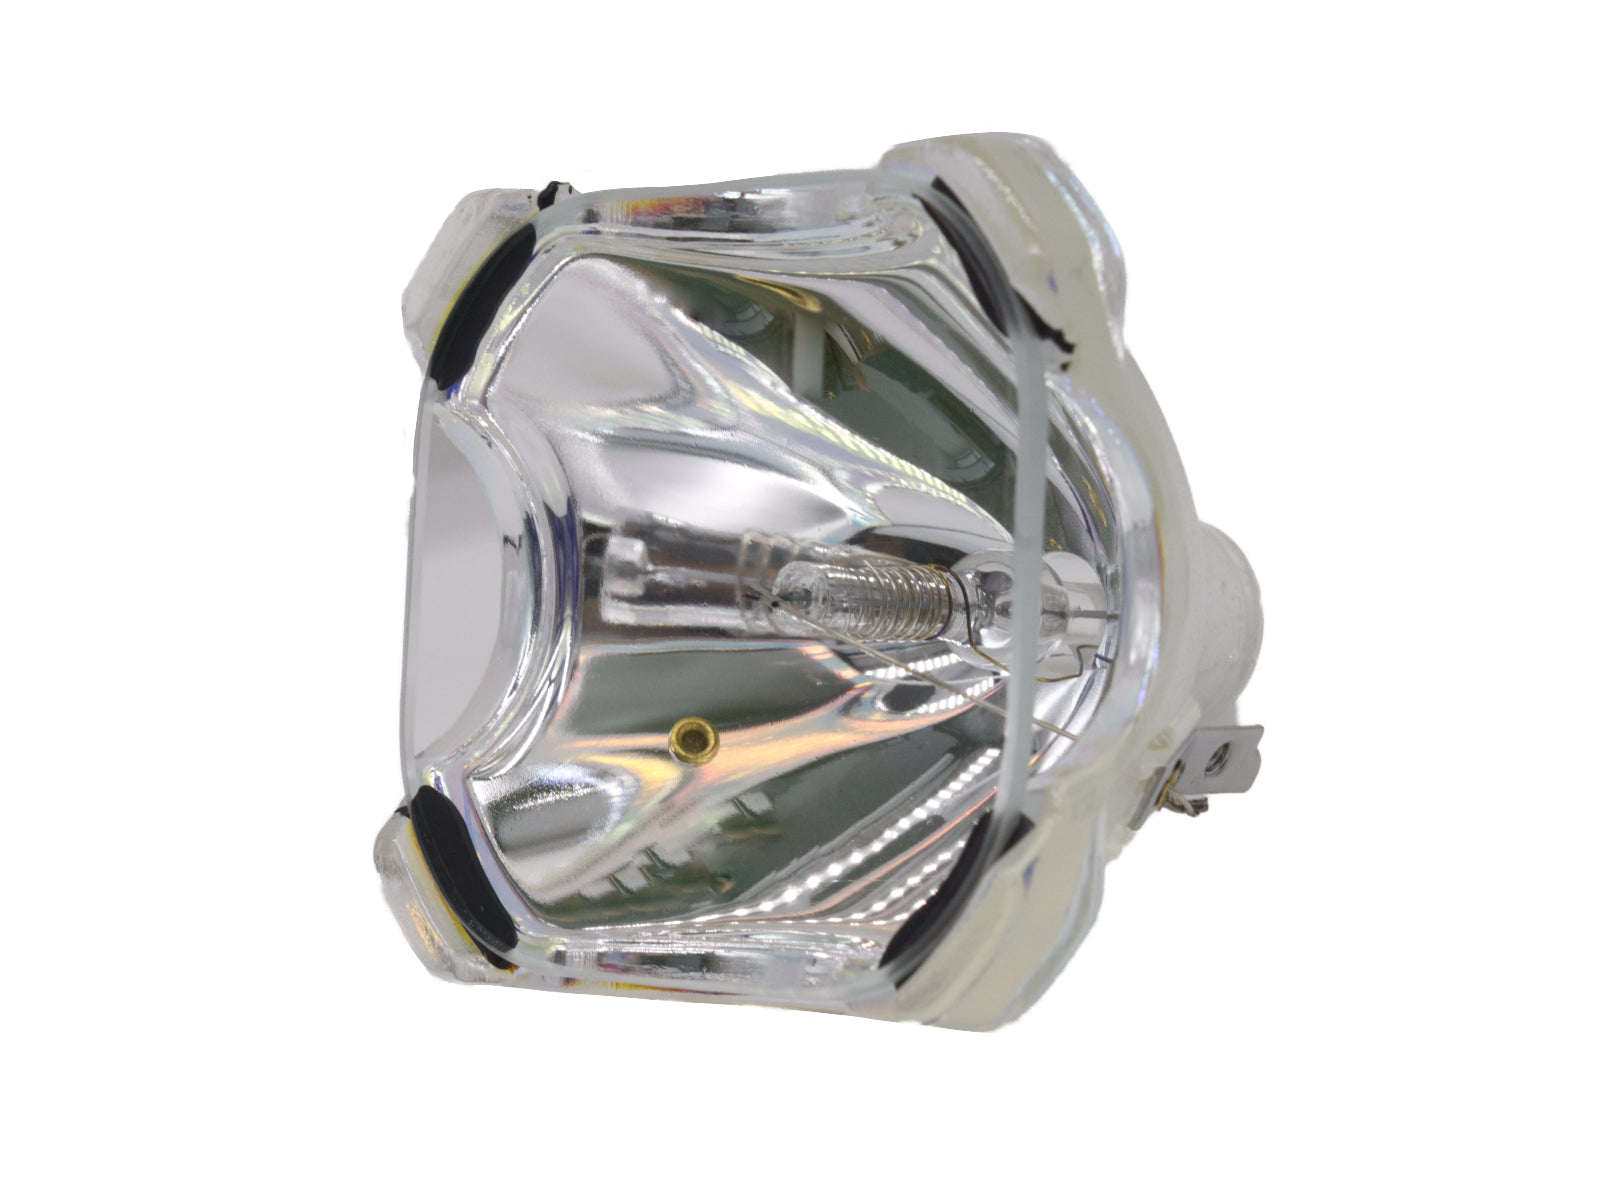 azurano Beamerlampe BLB44 Ersatz für PHILIPS UHP 200W 1.0 P22 Ersatzlampe für diverse Projektoren von BOXLIGHT, EPSON, SANYO, SONY, 200W - Bild 7